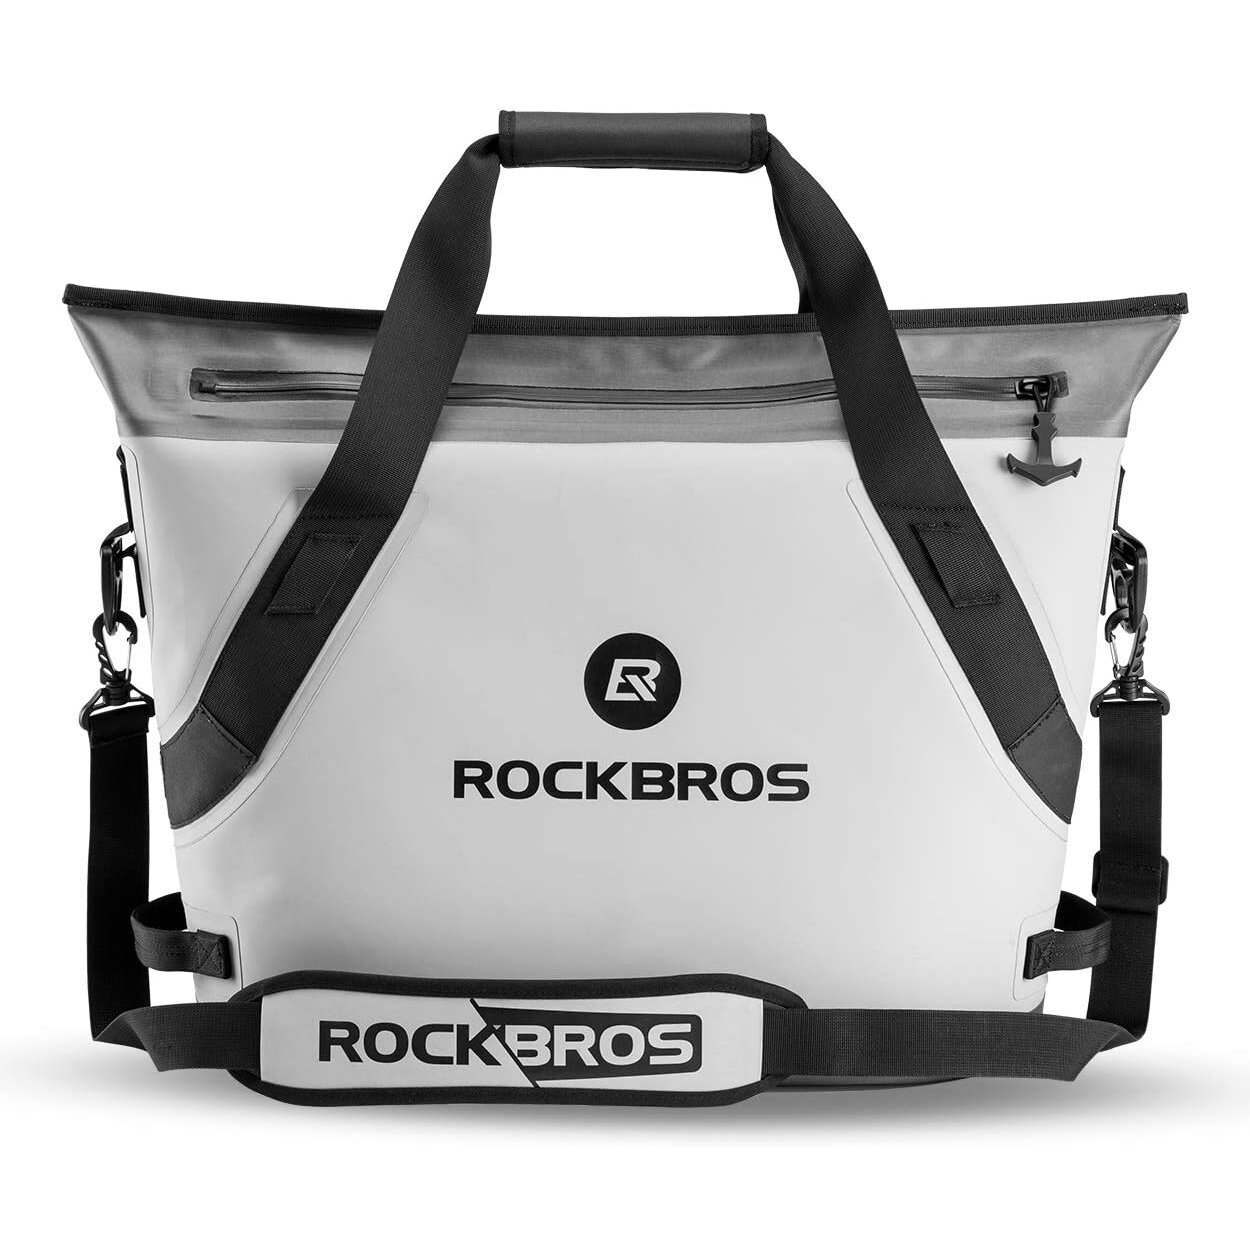 حقيبة تبريد ROCKBROS BX-003 بسعة 22 لترًا مقاومة للماء ومزودة بثلج ومناسبة للغداء والتخييم والنزهات ومعزولة حراريًا بالألومنيوم وهي حقيبة يدوية.